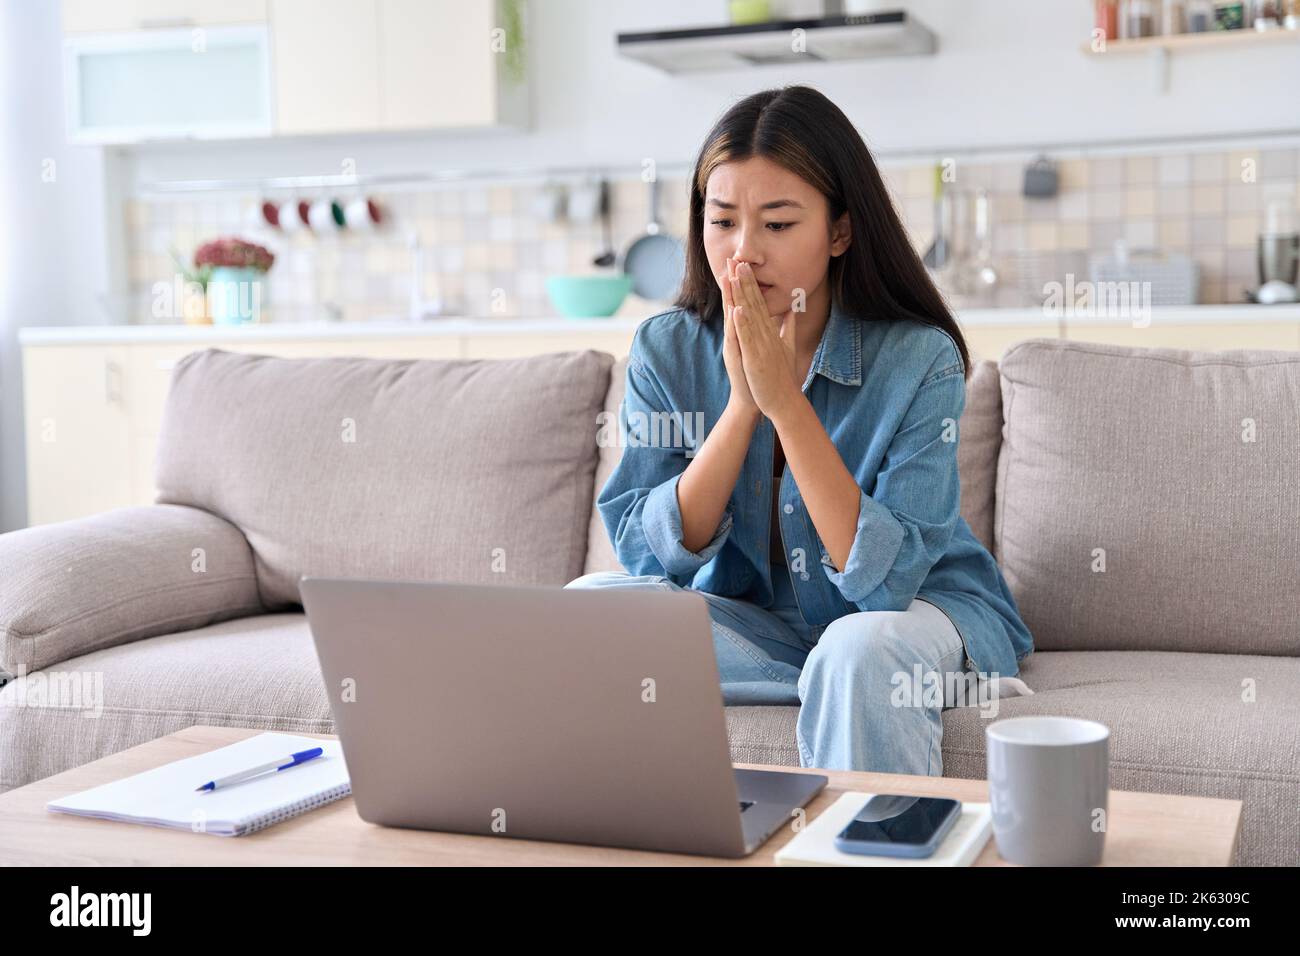 Nervosa donna asiatica che guarda lo schermo del notebook preoccupandosi delle cattive notizie Foto Stock